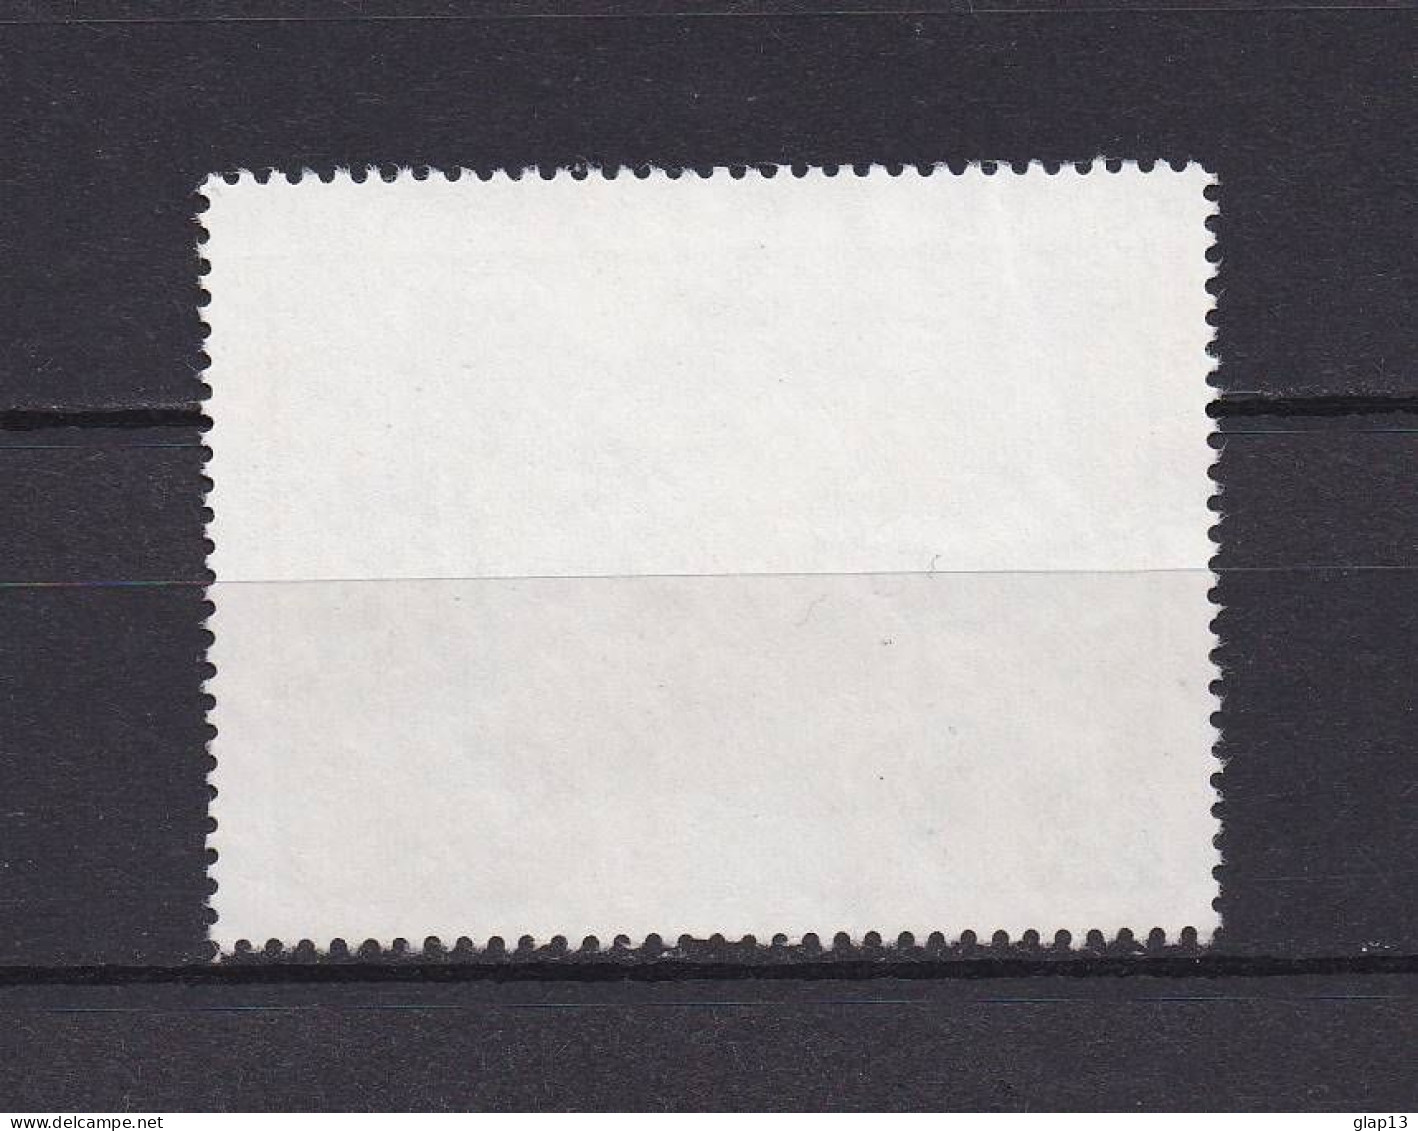 POLYNESIE 1970 PA N°40 OBLITERE TABLEAU - Used Stamps